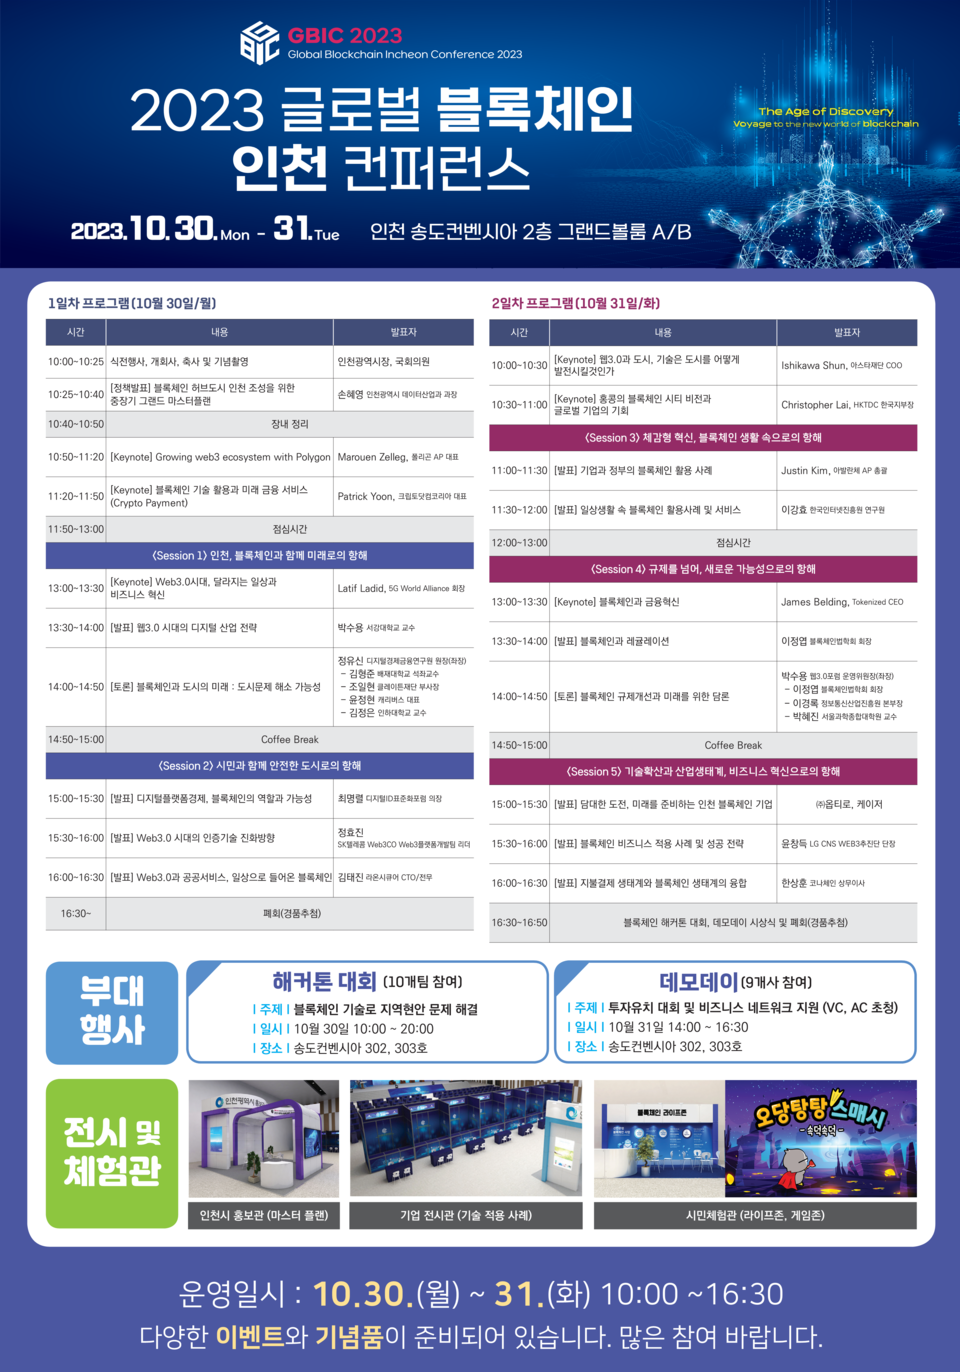 글로벌 블록체인 인천 컨퍼런스(GBIC) 관련 포스터(제공=인천시)